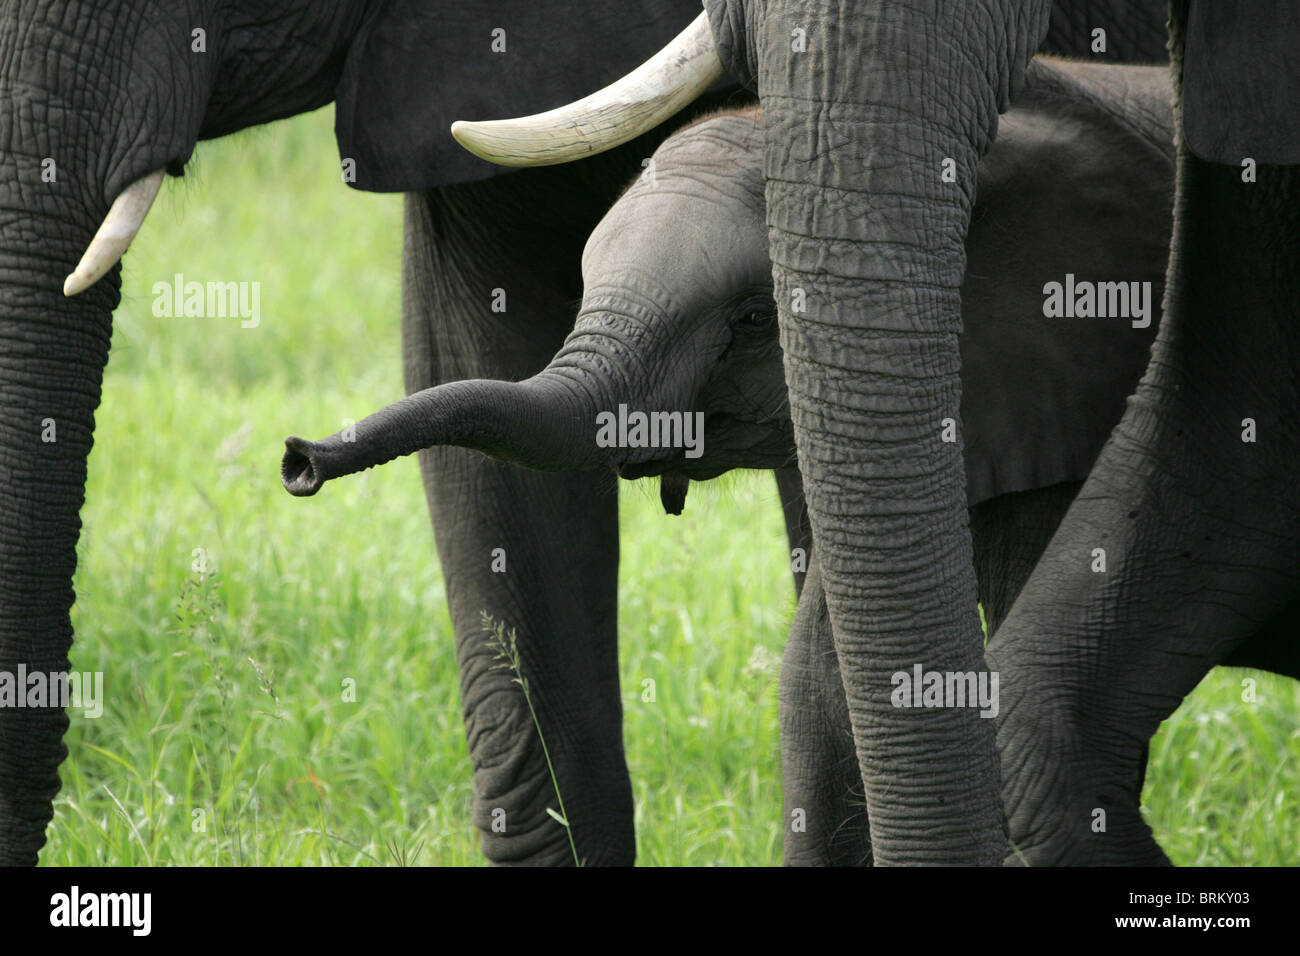 Baby-Elefant mit seinem Rüssel erhöht stehende unter älteren Elefanten Stockfoto